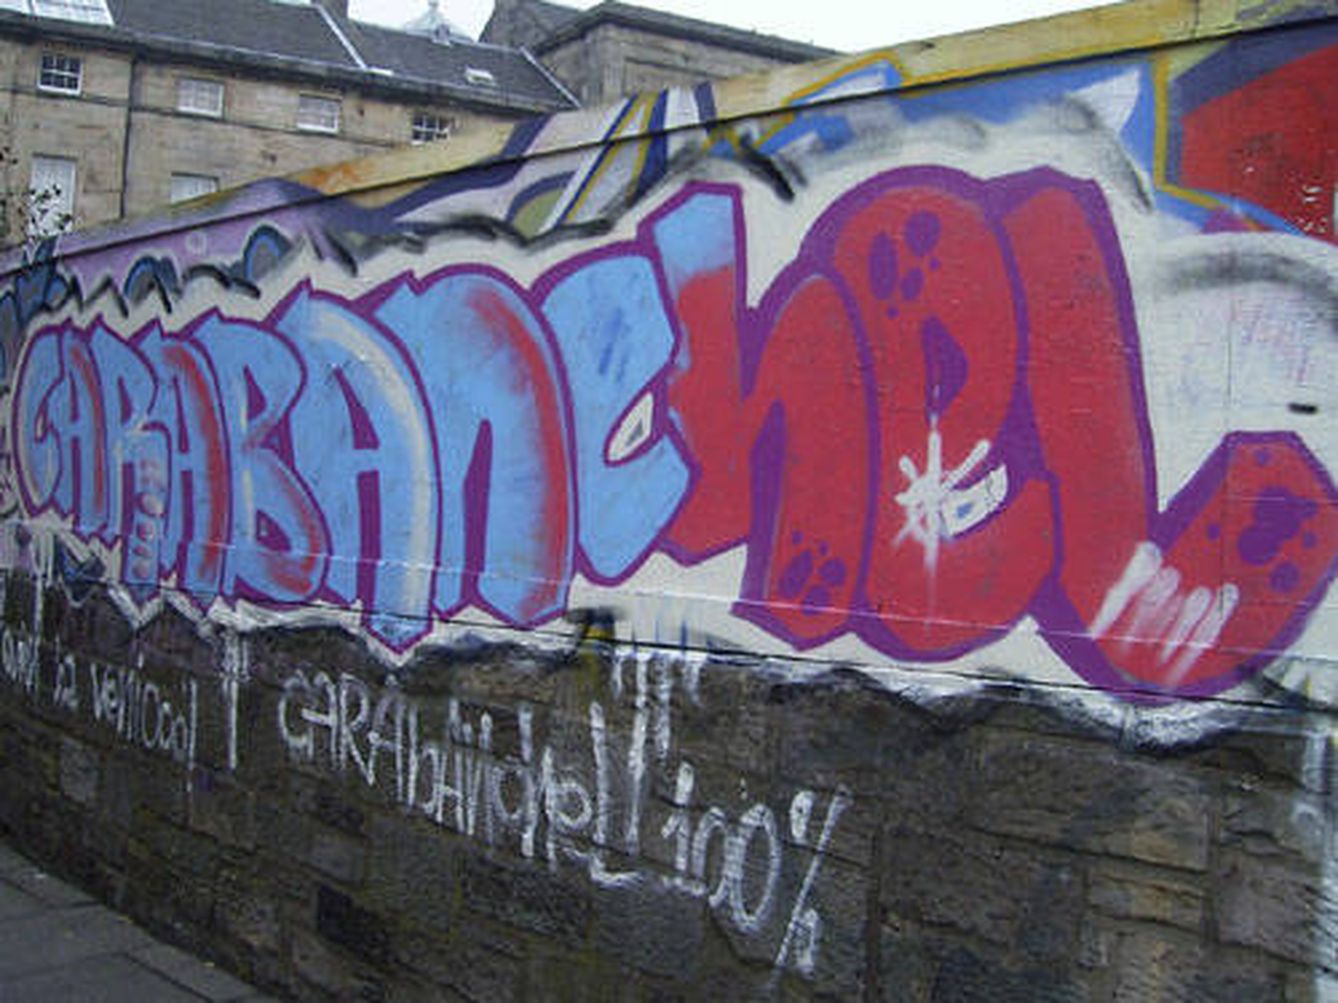 Un graffiti de Carabanchel en Carabanchel. (CC/duncan cumming)